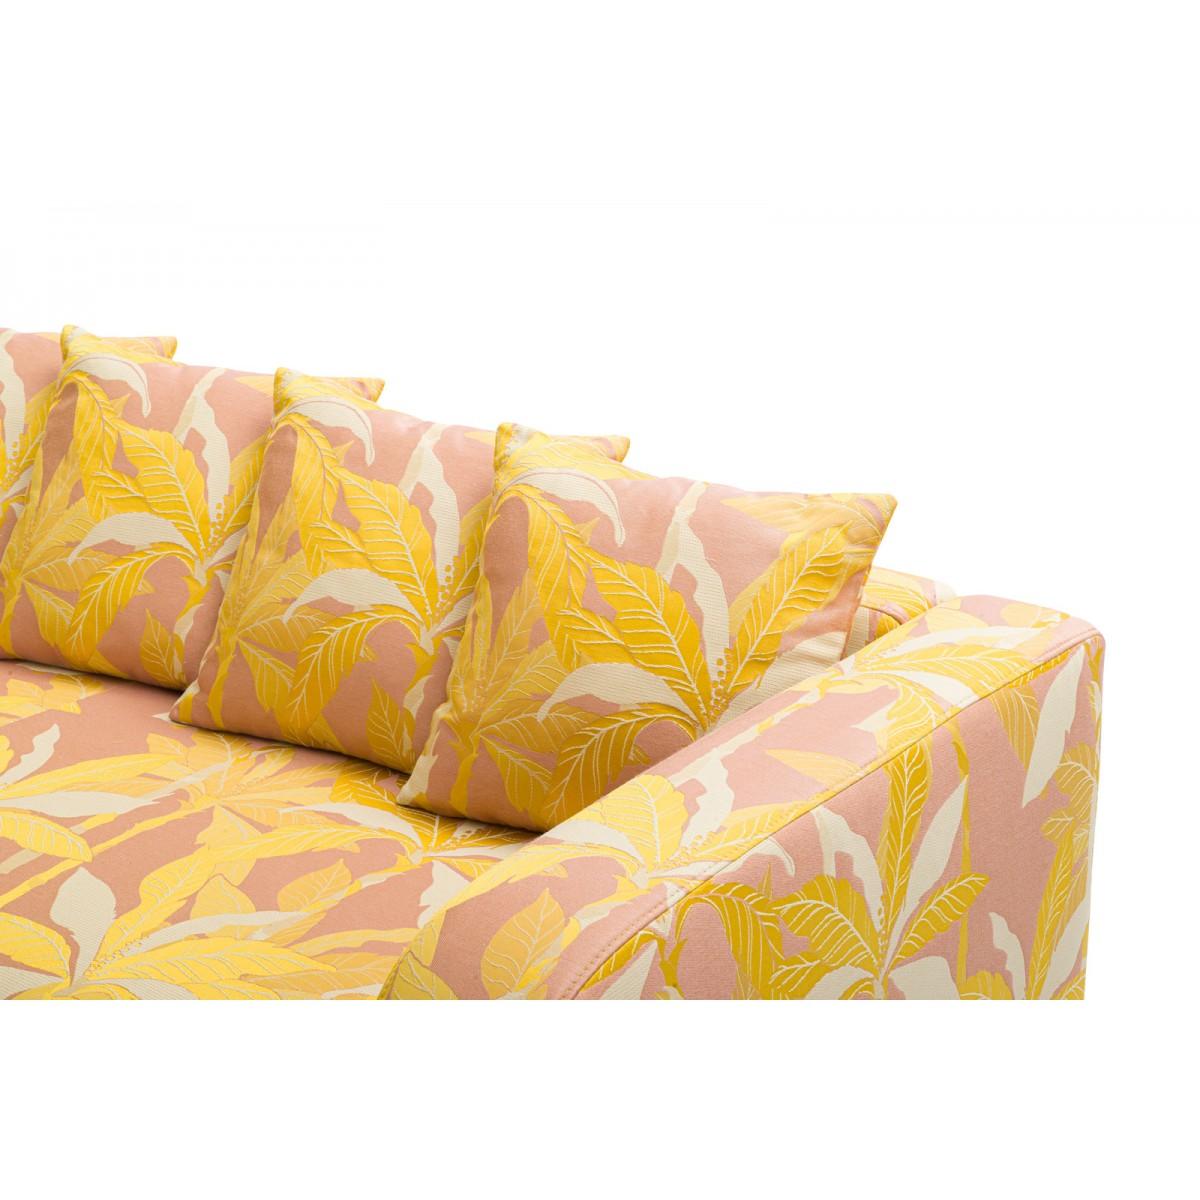 Contemporary Popus Editions Graziella 2 Seater Sofa in Pink Miami Jacquard Fabric For Sale